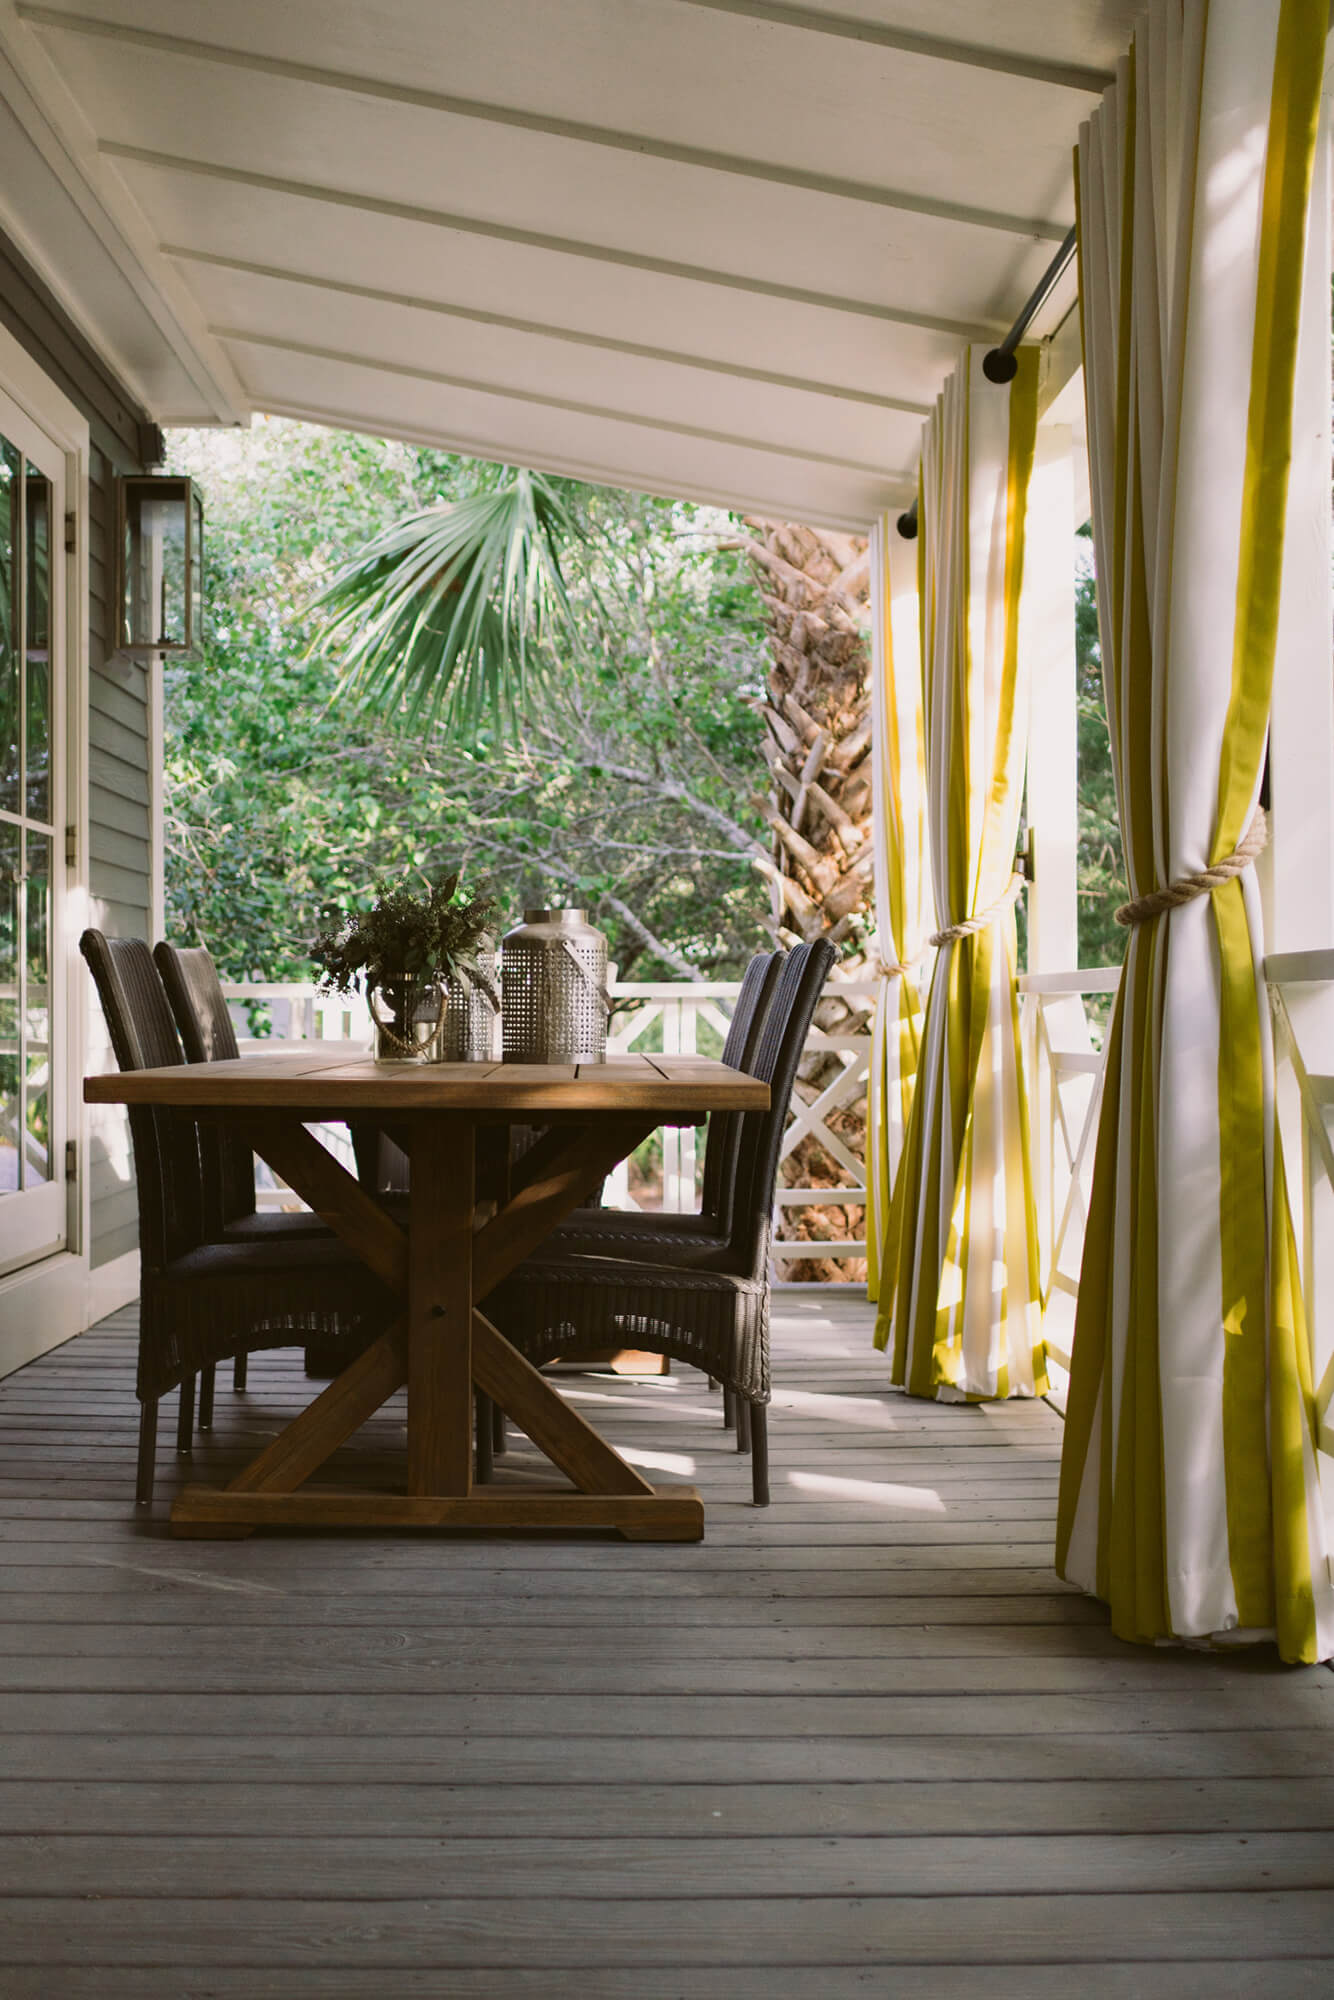 Uma mesa de jantar na varanda protegido por cortinas listradas amarelas e brancas feitas com tecido de estofado Sunbrella